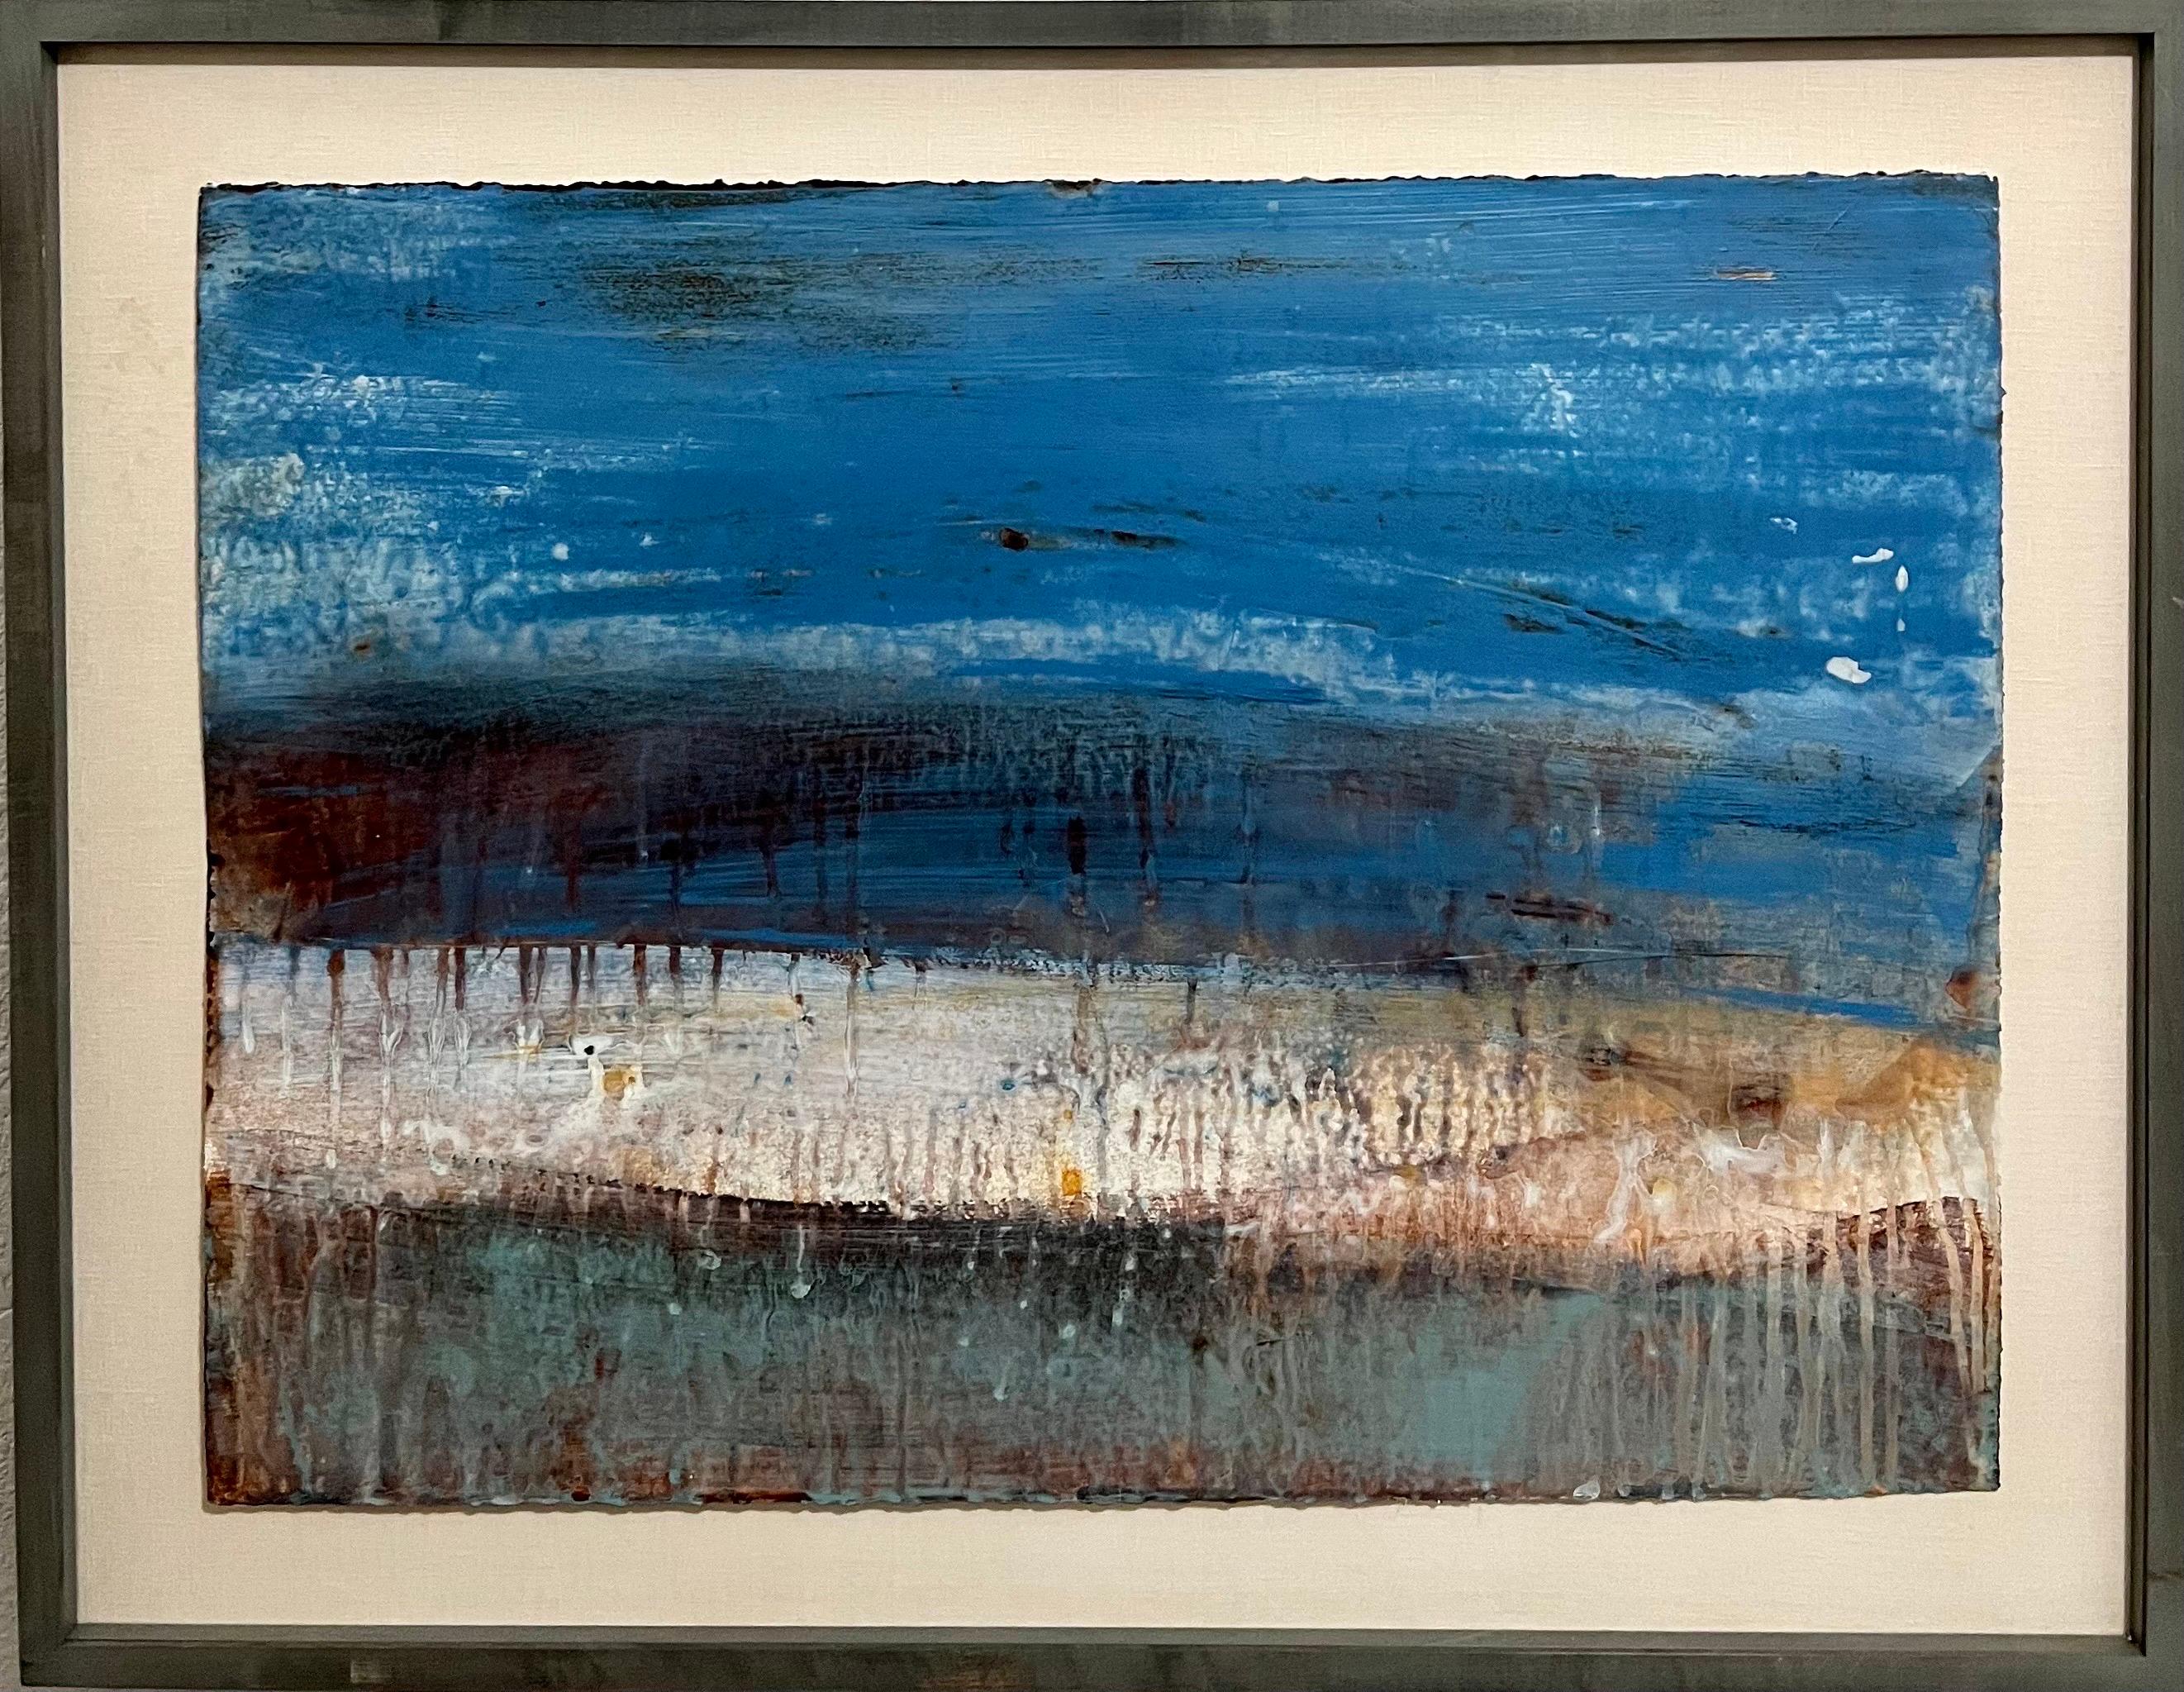 Abstrakt-expressionistische Tugenden, Landschaft, venezianisches Gipsgemälde, Schal Dulaney – Painting von Shawn Dulaney